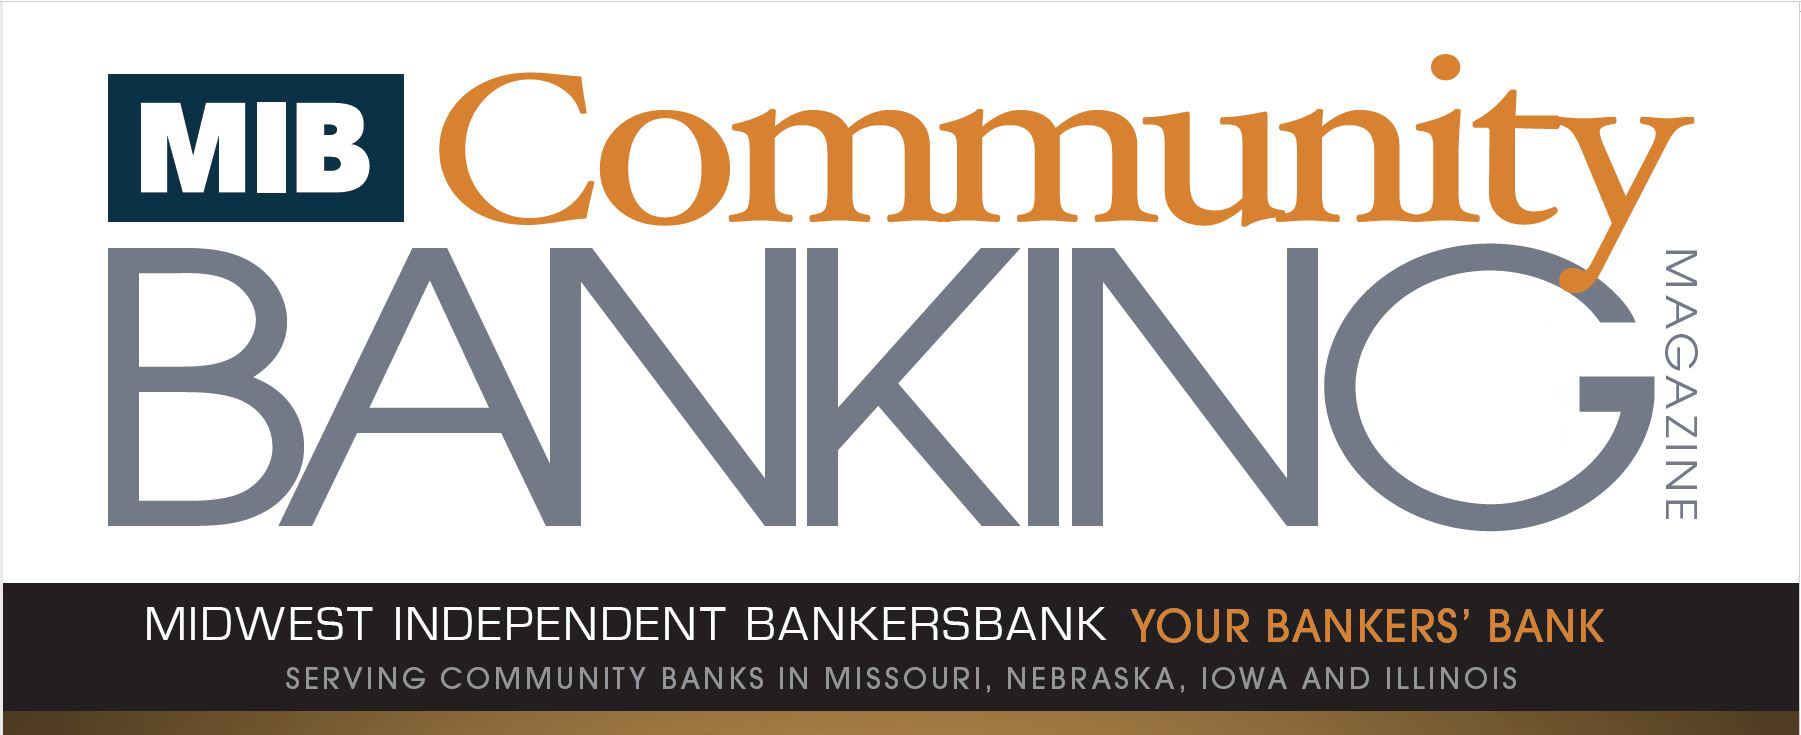 Community Banking Magazine